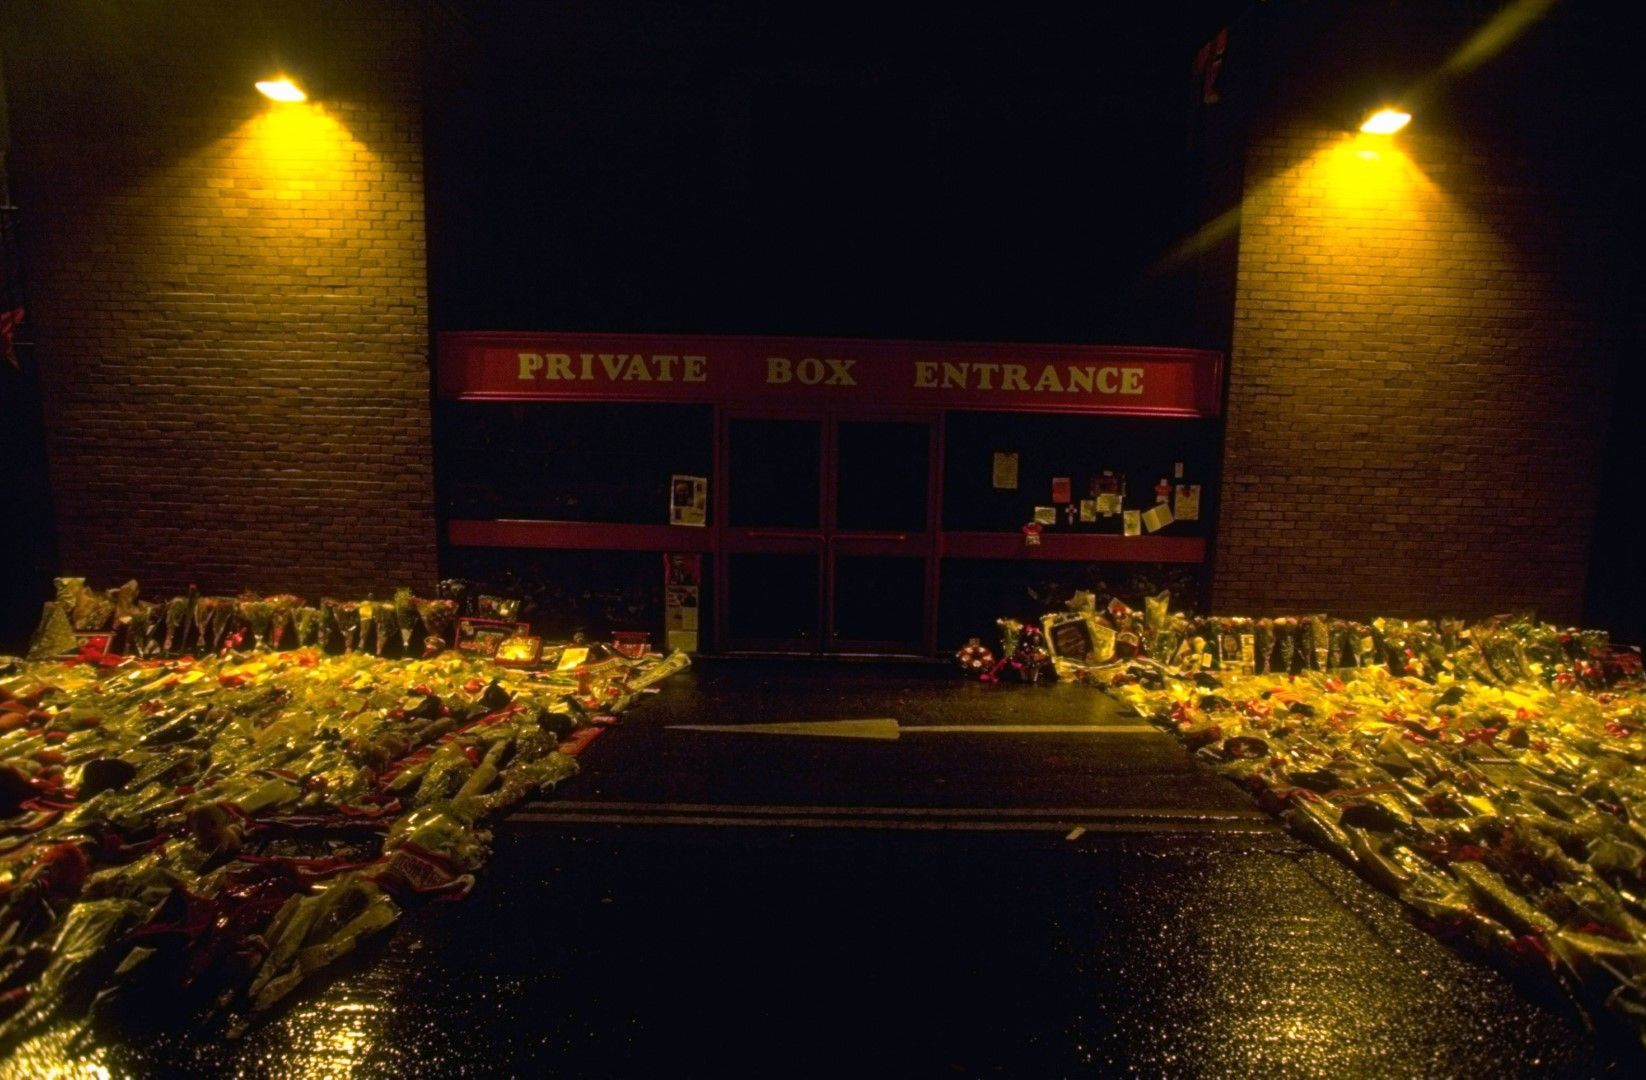 20 януари 1994 г. - тъжен ден. "Олд Трафорд" е превърнат в място за поклонение след смъртта на легендарния мениджър Мат Бъзби